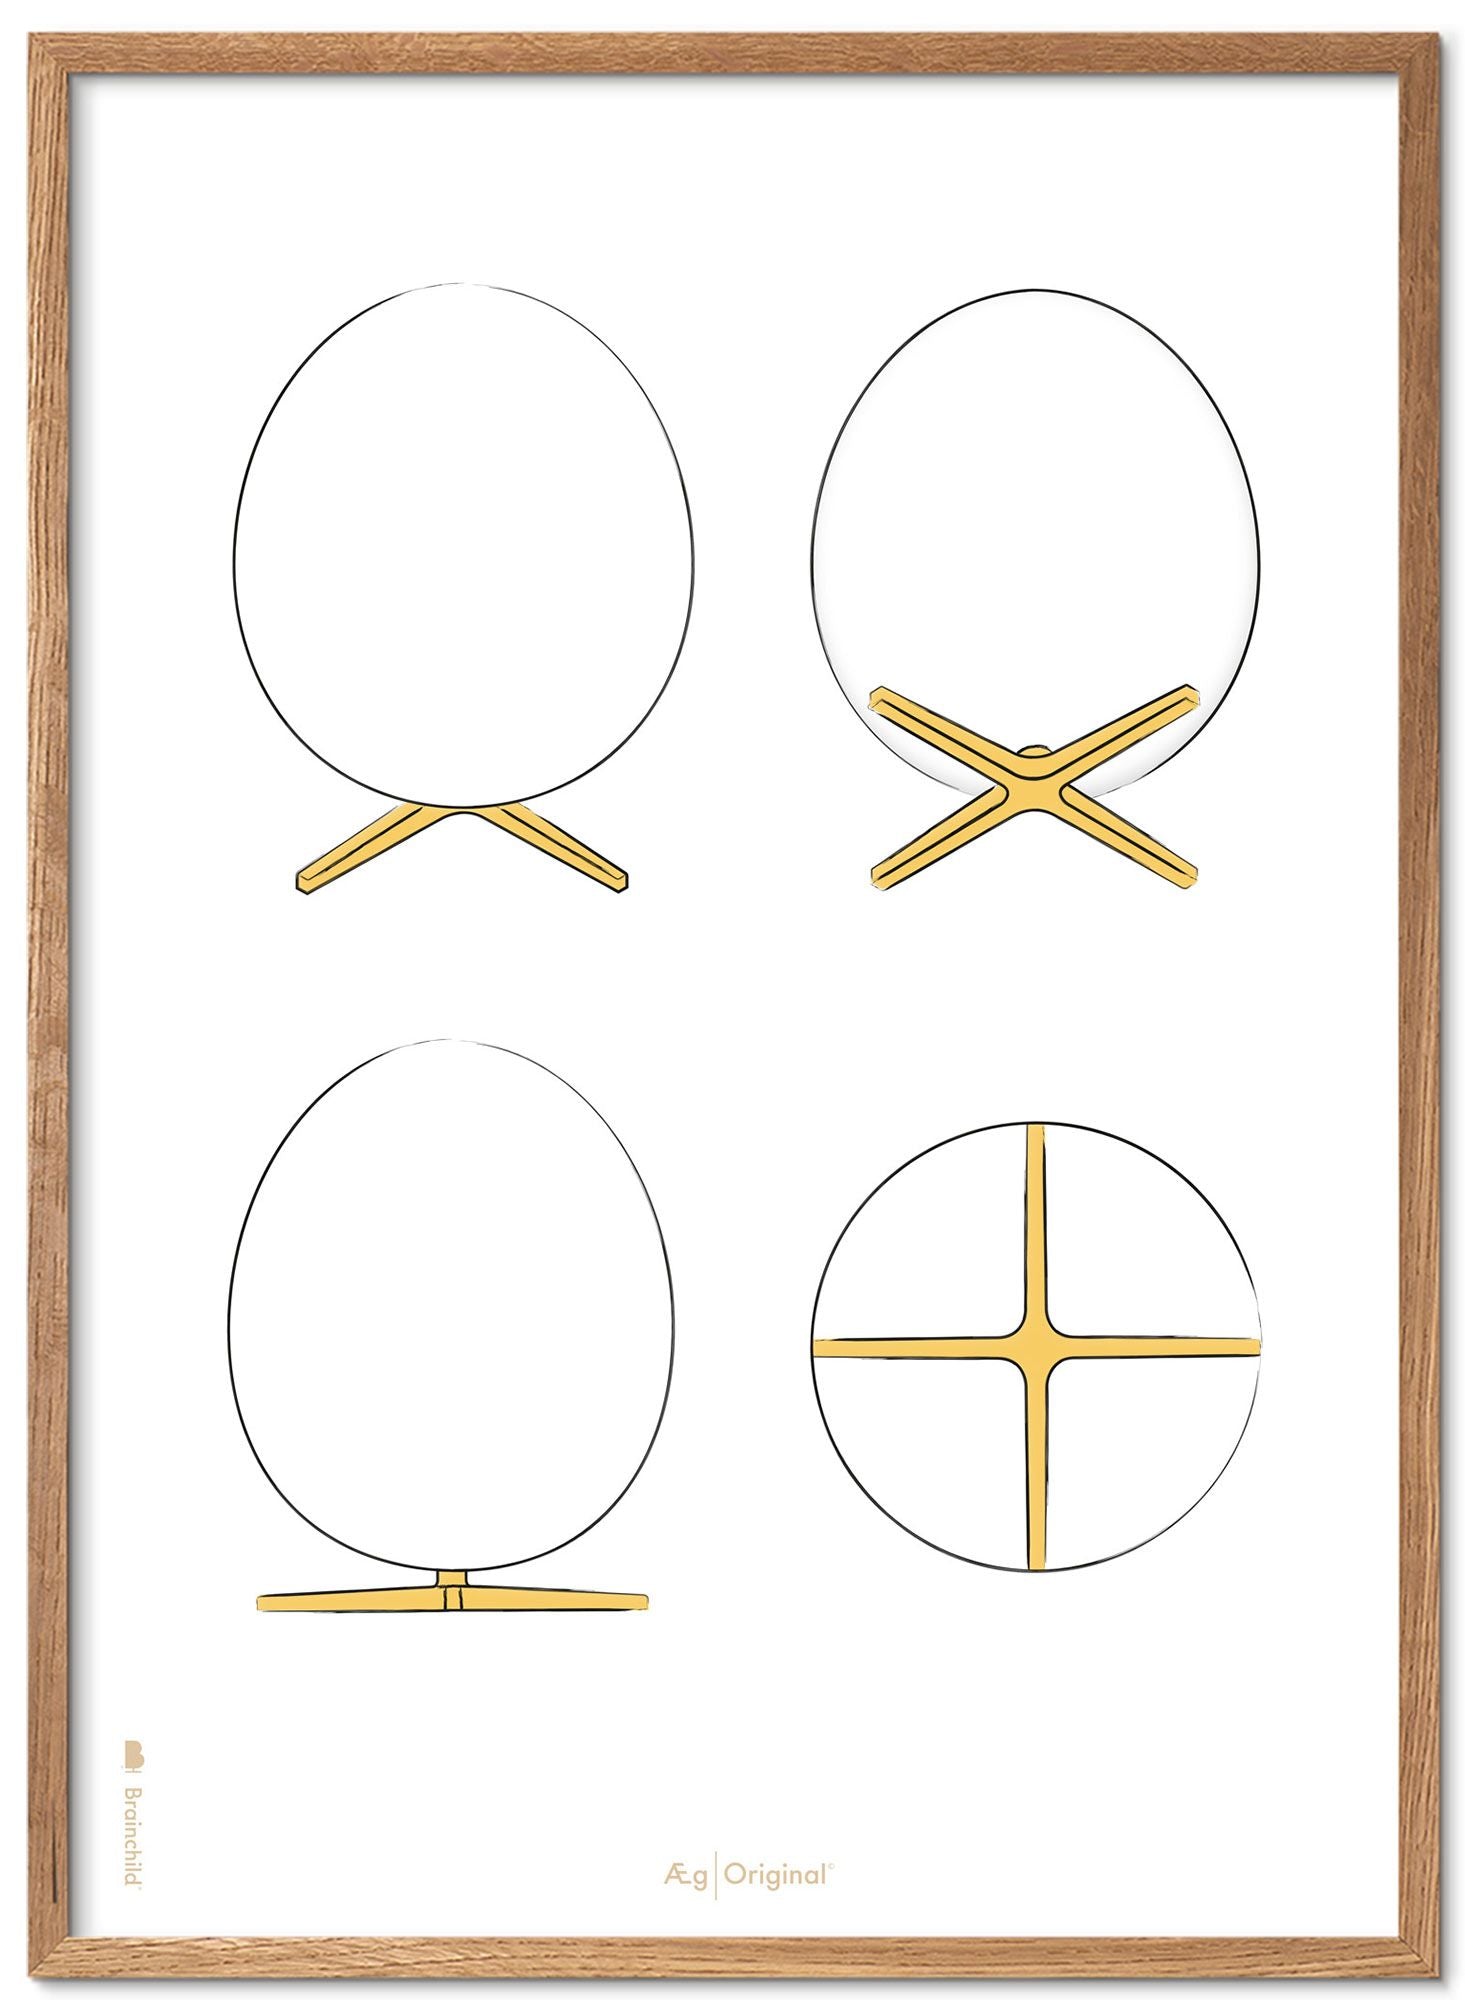 Imaginée le cadre d'affiches des croquis de conception d'oeufs en bois clair A5, fond blanc